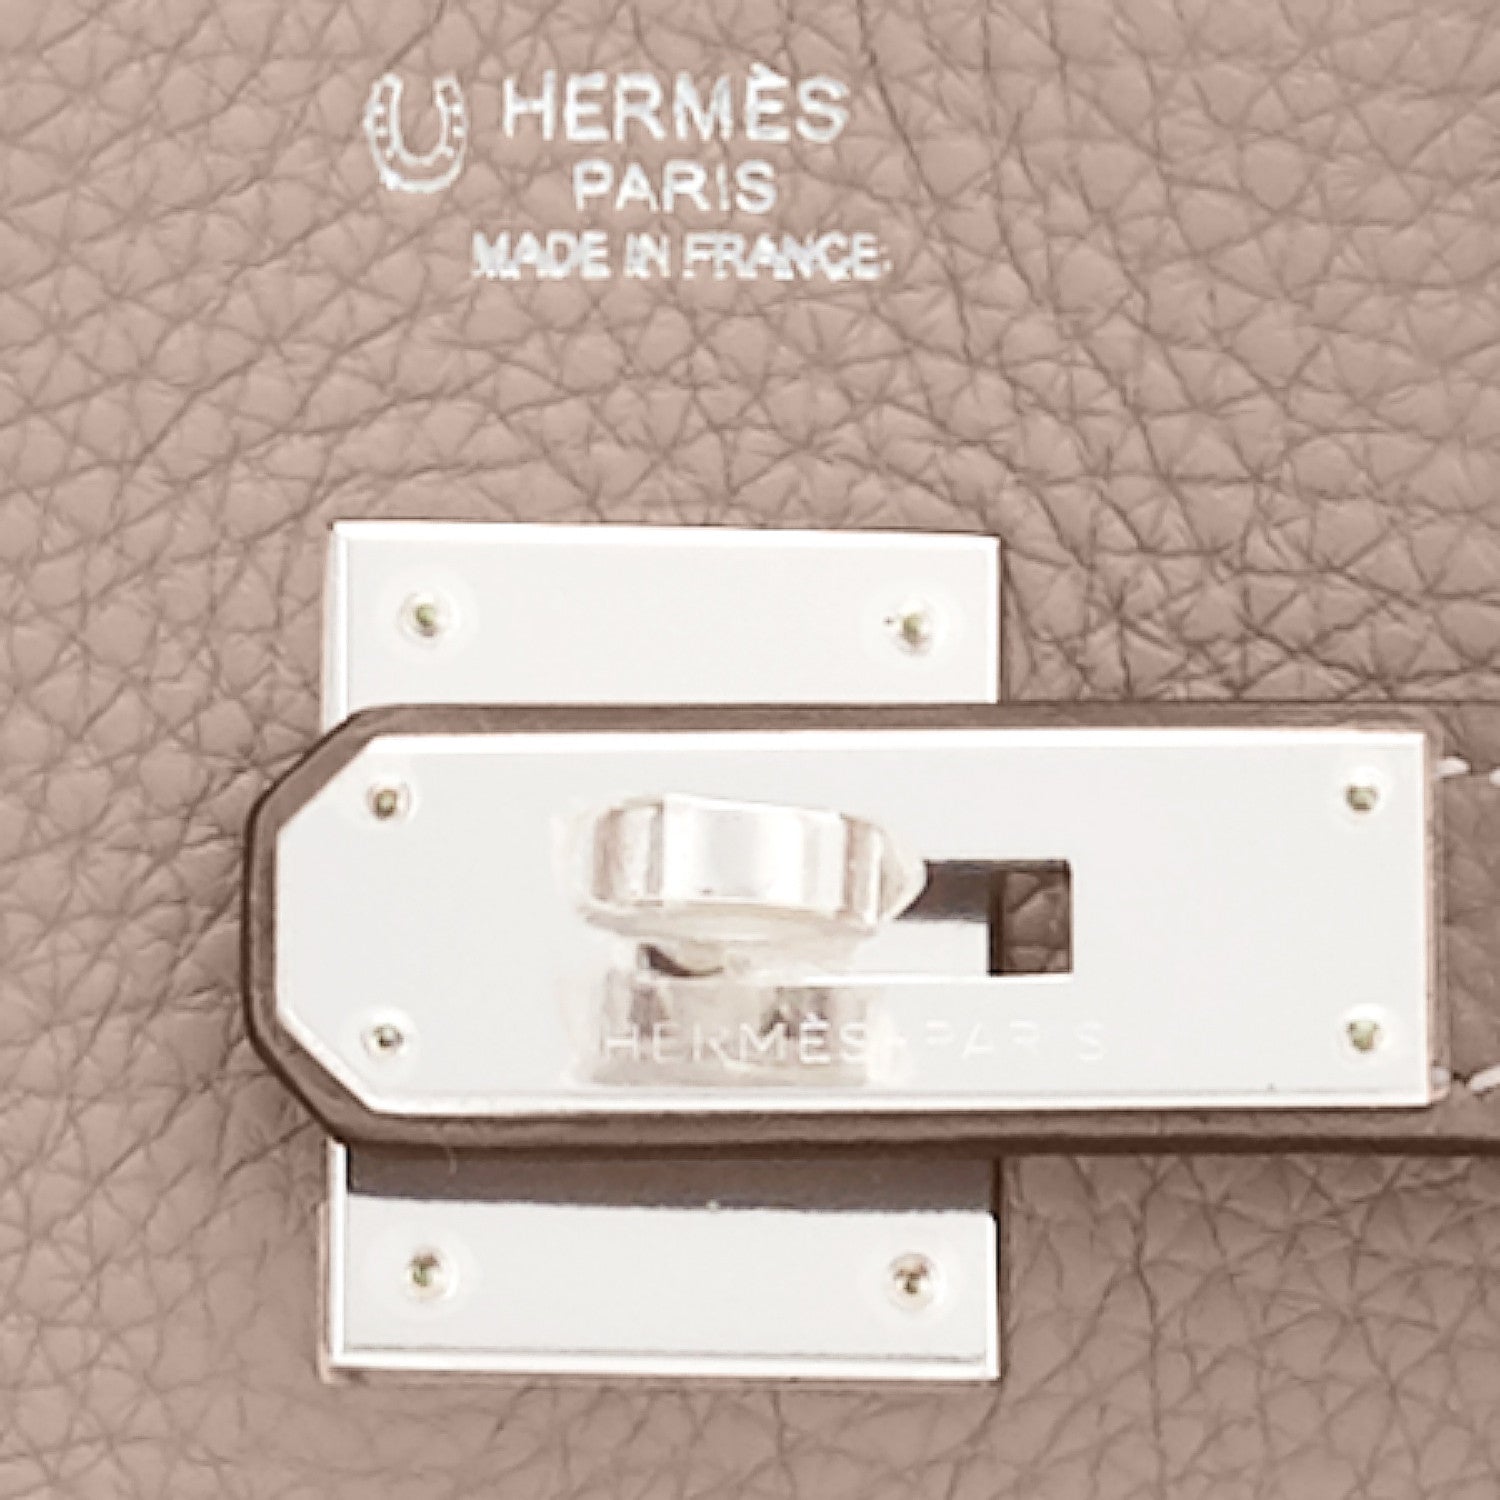 Hermes Birkin 30cm Etoupe Taupe Gold Togo Bag Z Stamp, 2021